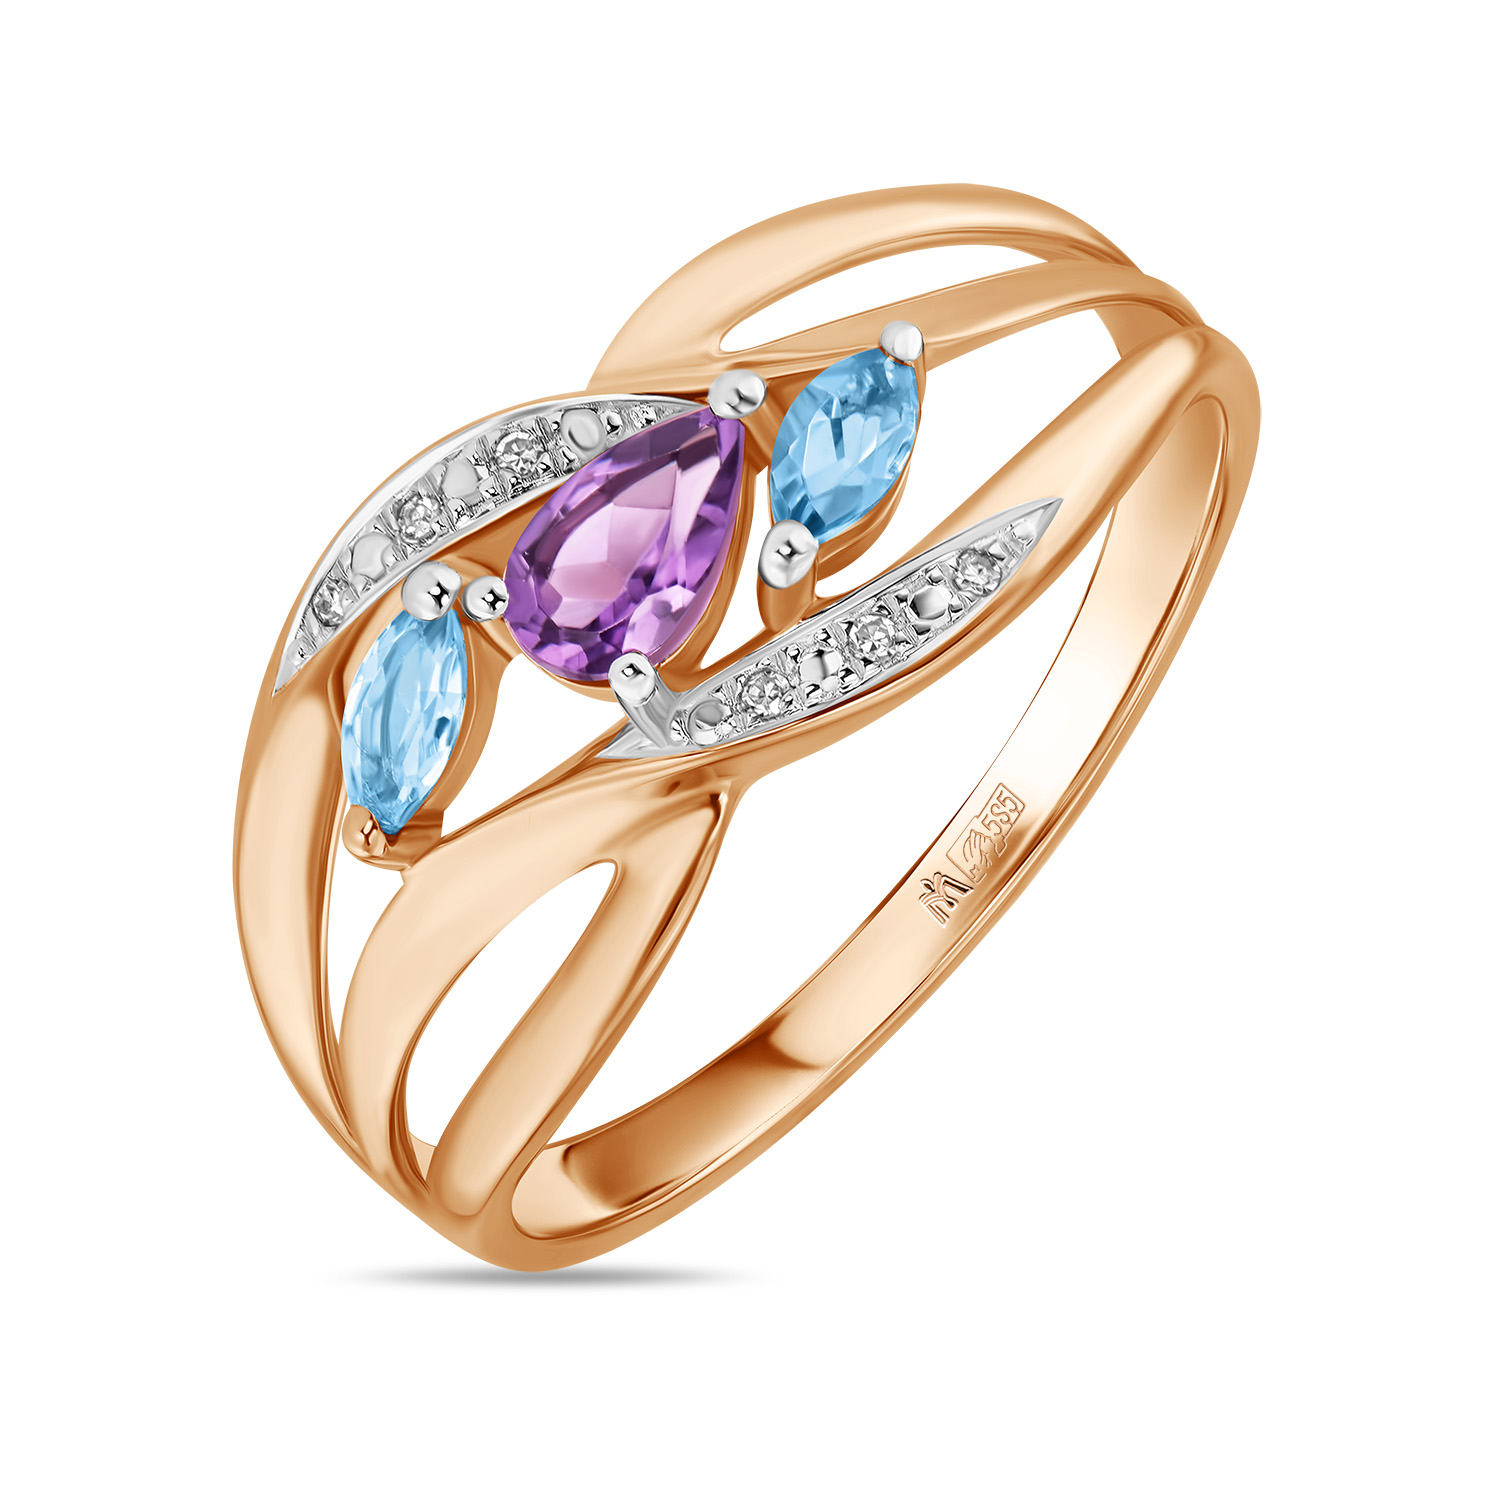 Кольца МЮЗ Золотое кольцо с аметистом, топазом и бриллиантами кольца мюз золотое кольцо с аметистом топазом бриллиантами и перидотом